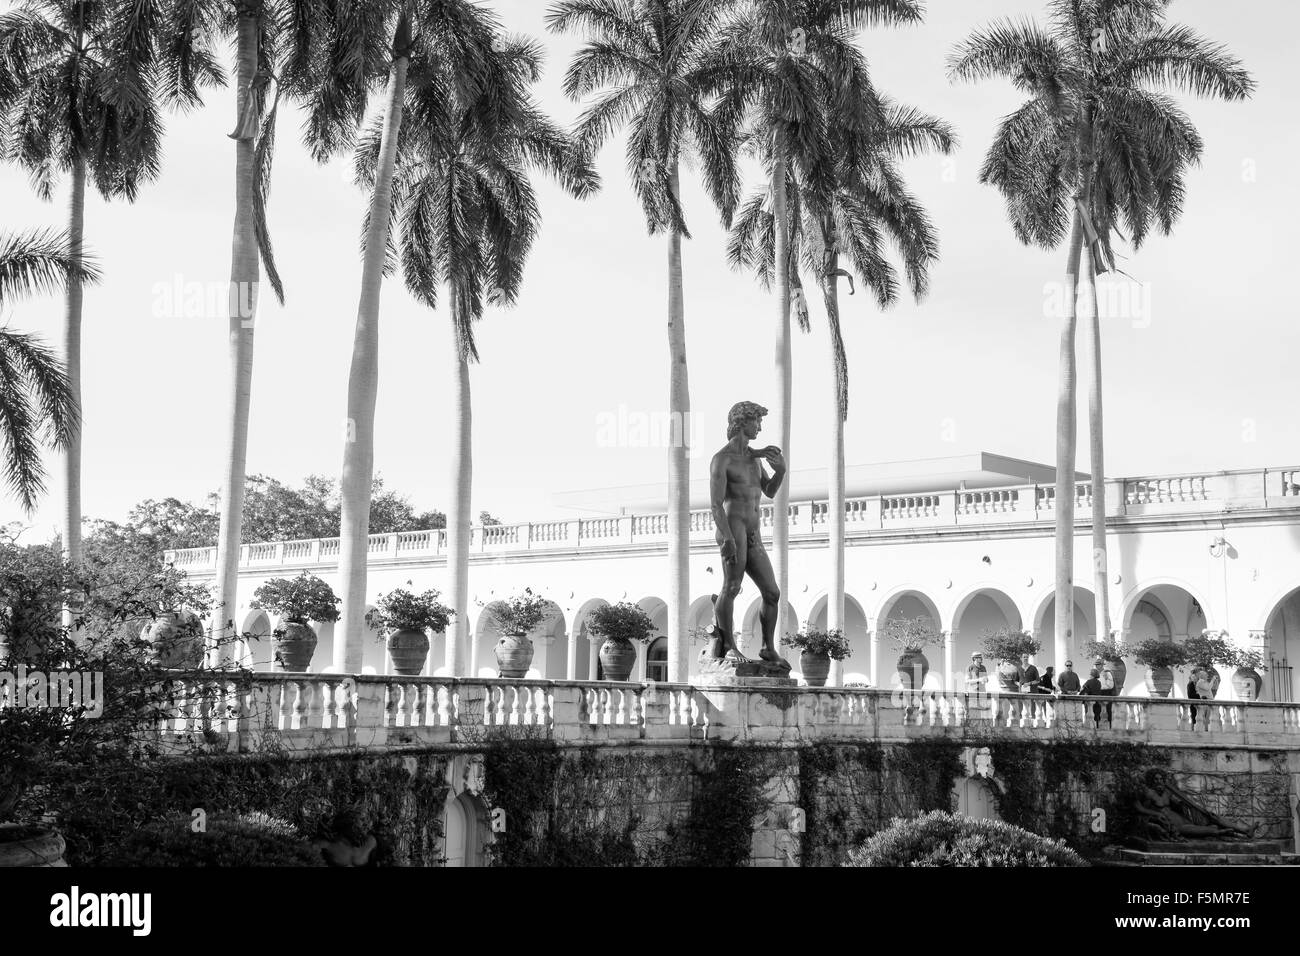 Schwarz-weiß Bild von Palmen und Gärten mit einer Nachbildung von Michelangelos David in den klingelnden Art Museum, Sarasota, FL Stockfoto